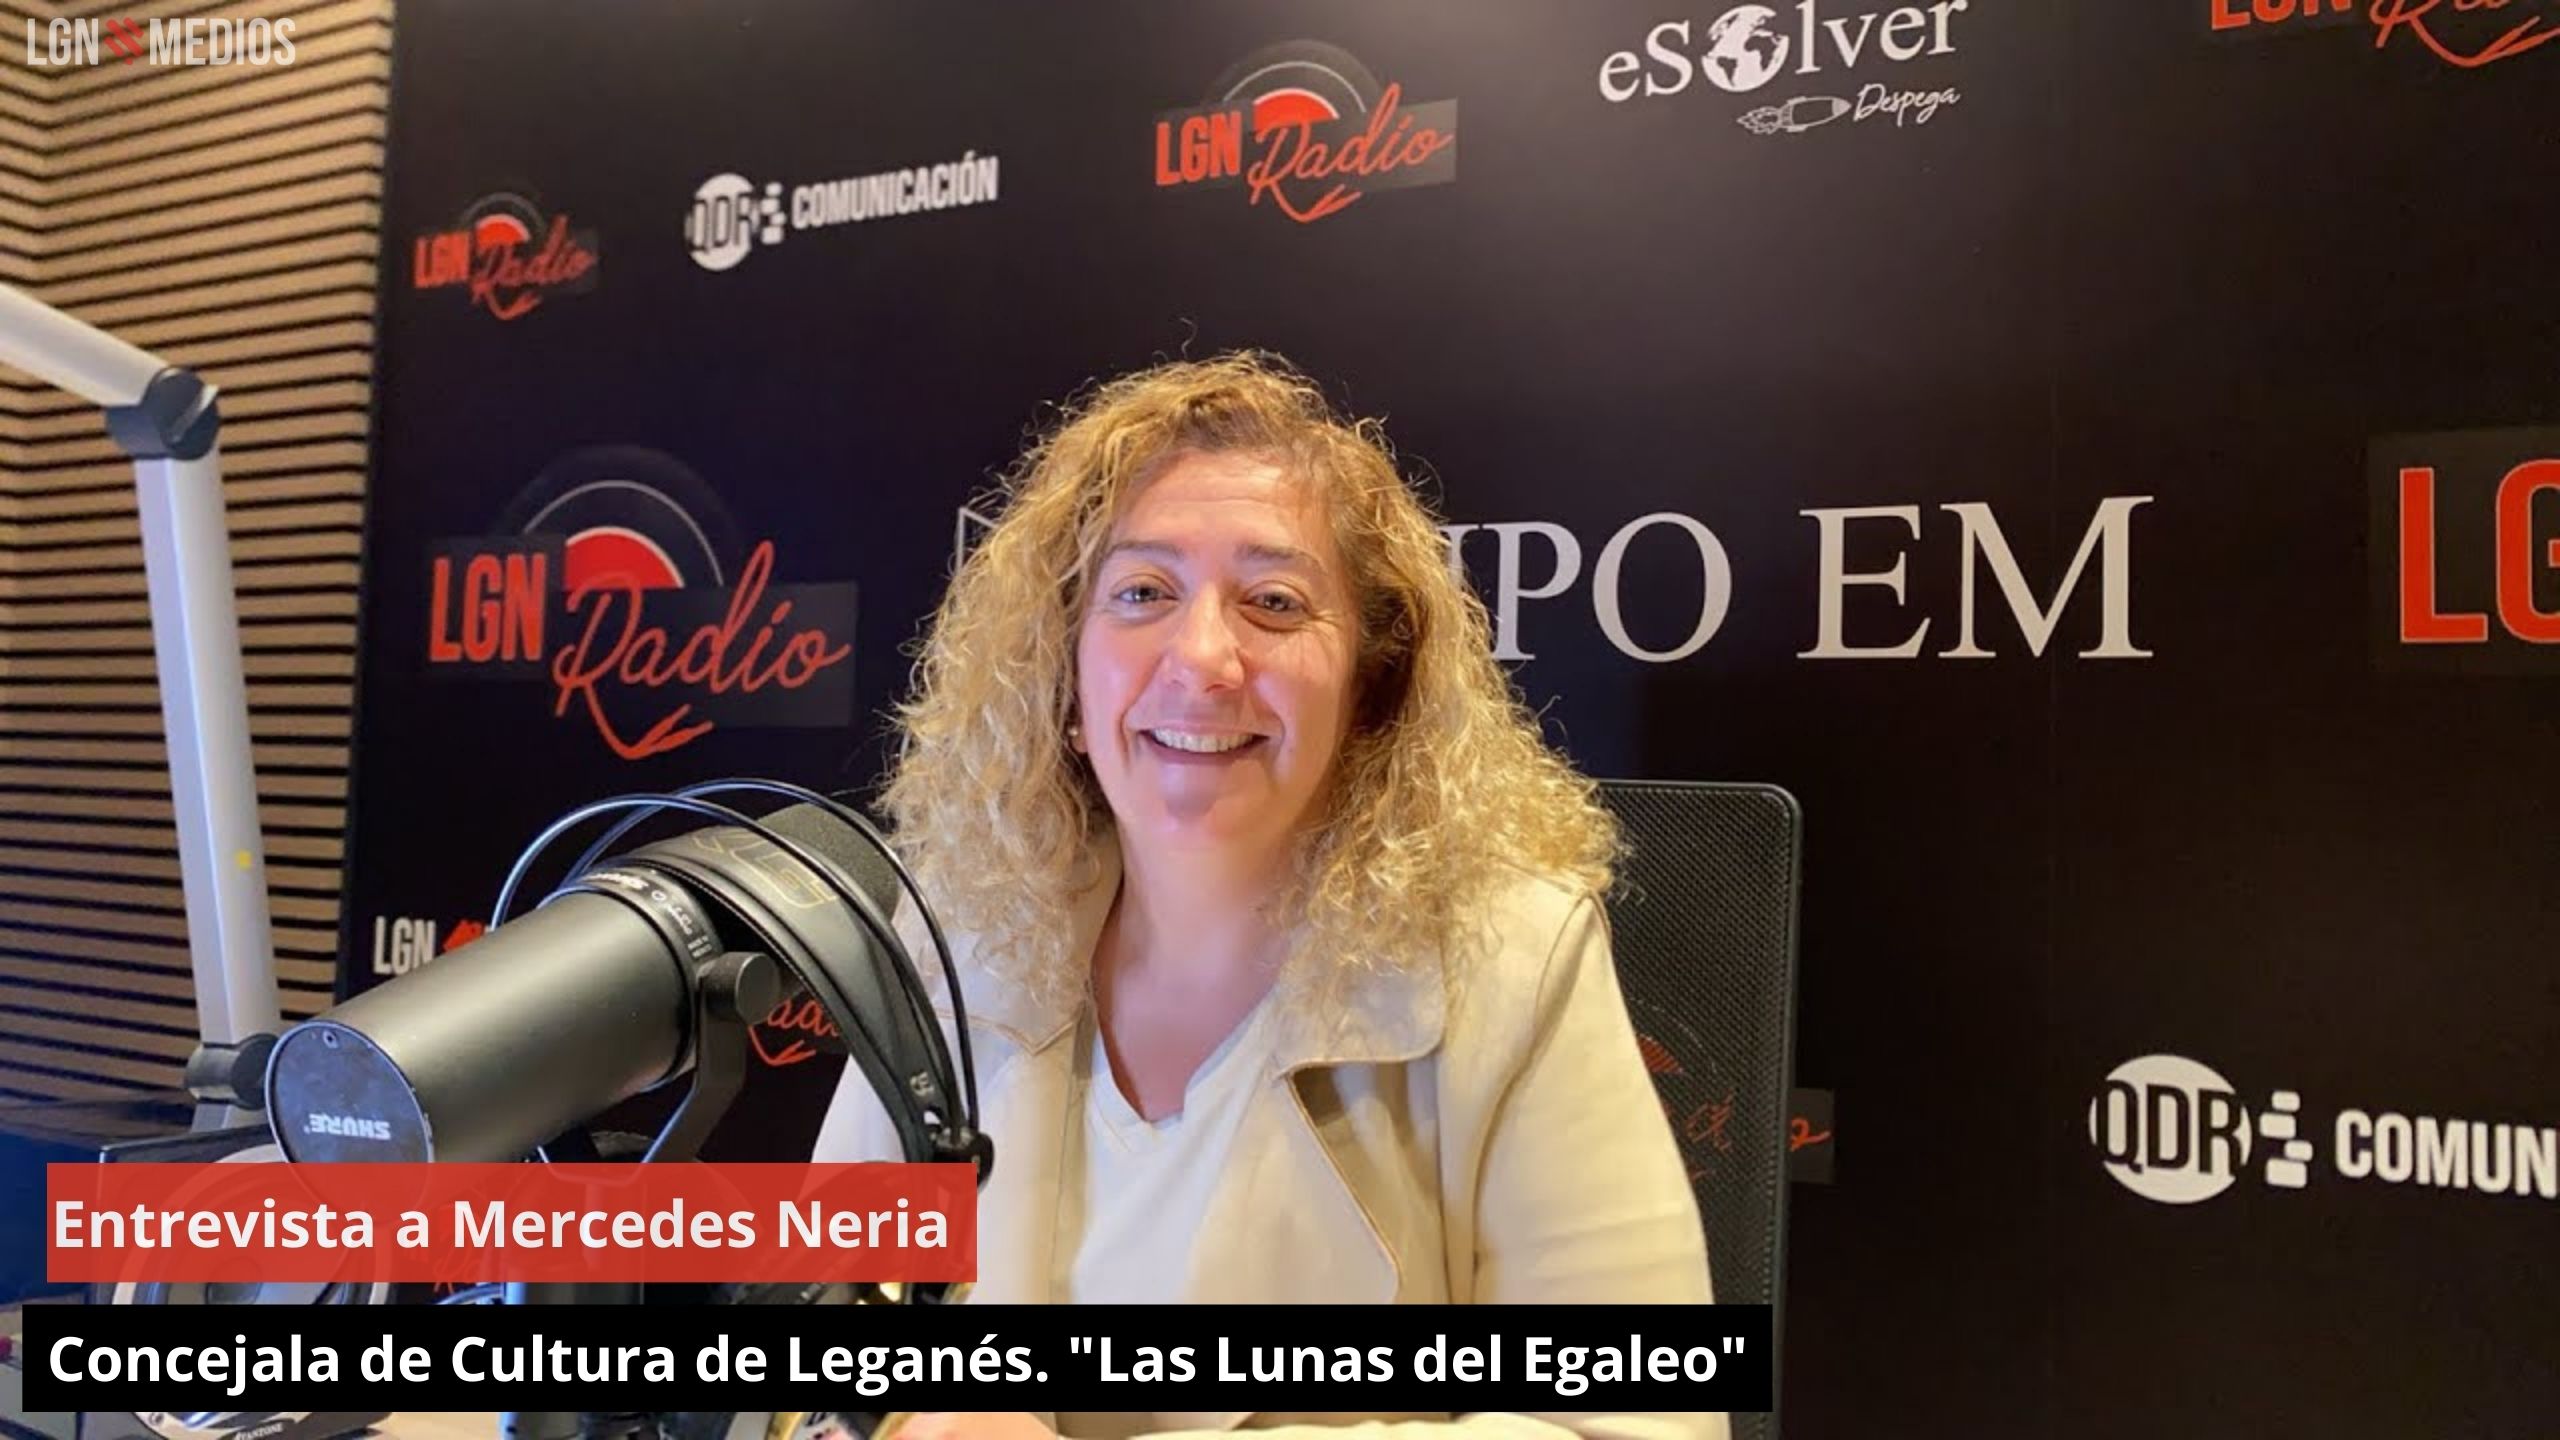 Entrevista a Mercedes Neria. Concejala de Cultura de Leganés. "Las Lunas del Egaleo"